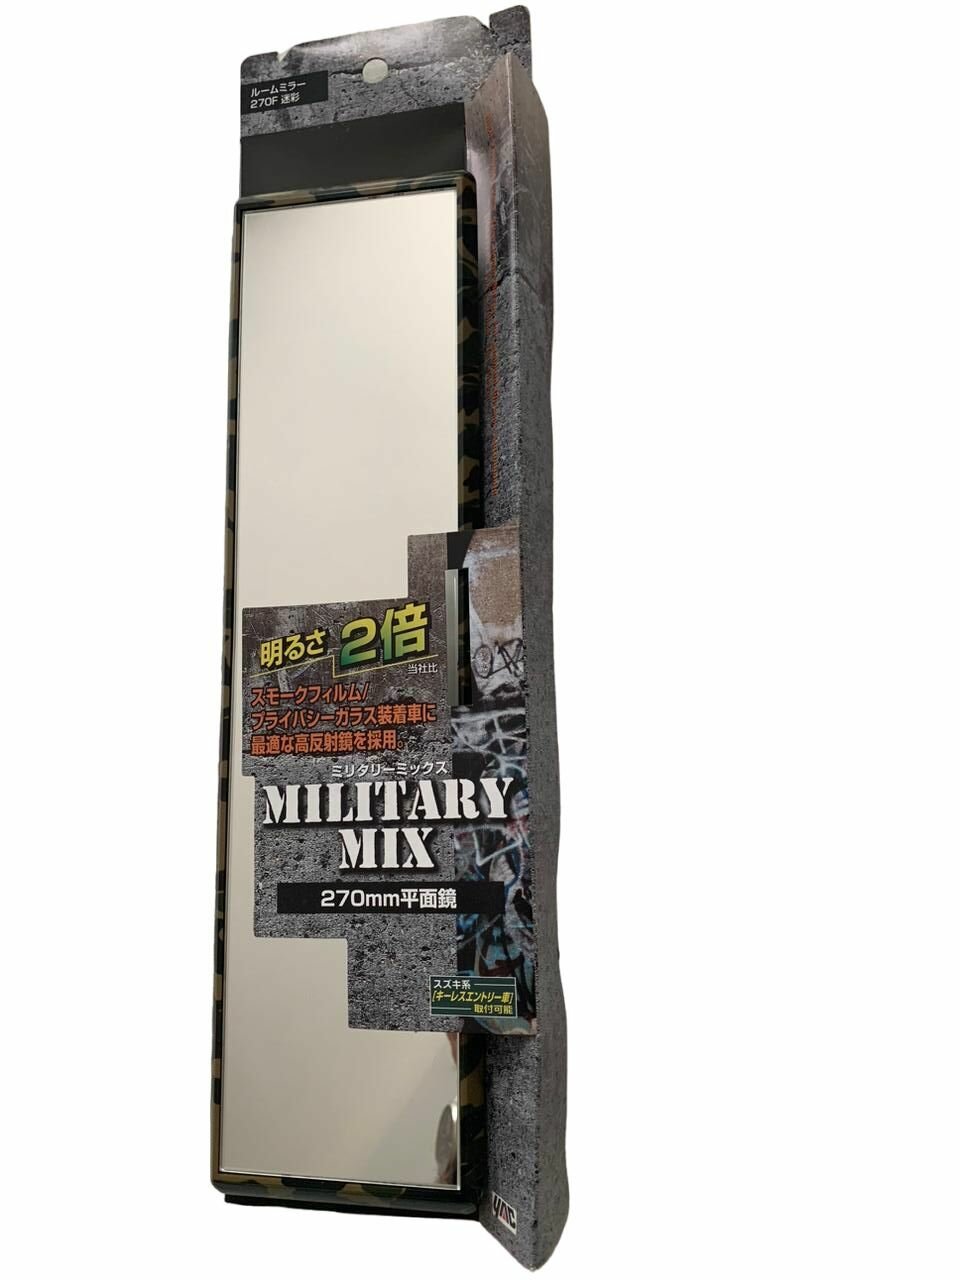 Зеркало заднего вида Military Mix, панорамное 270мм